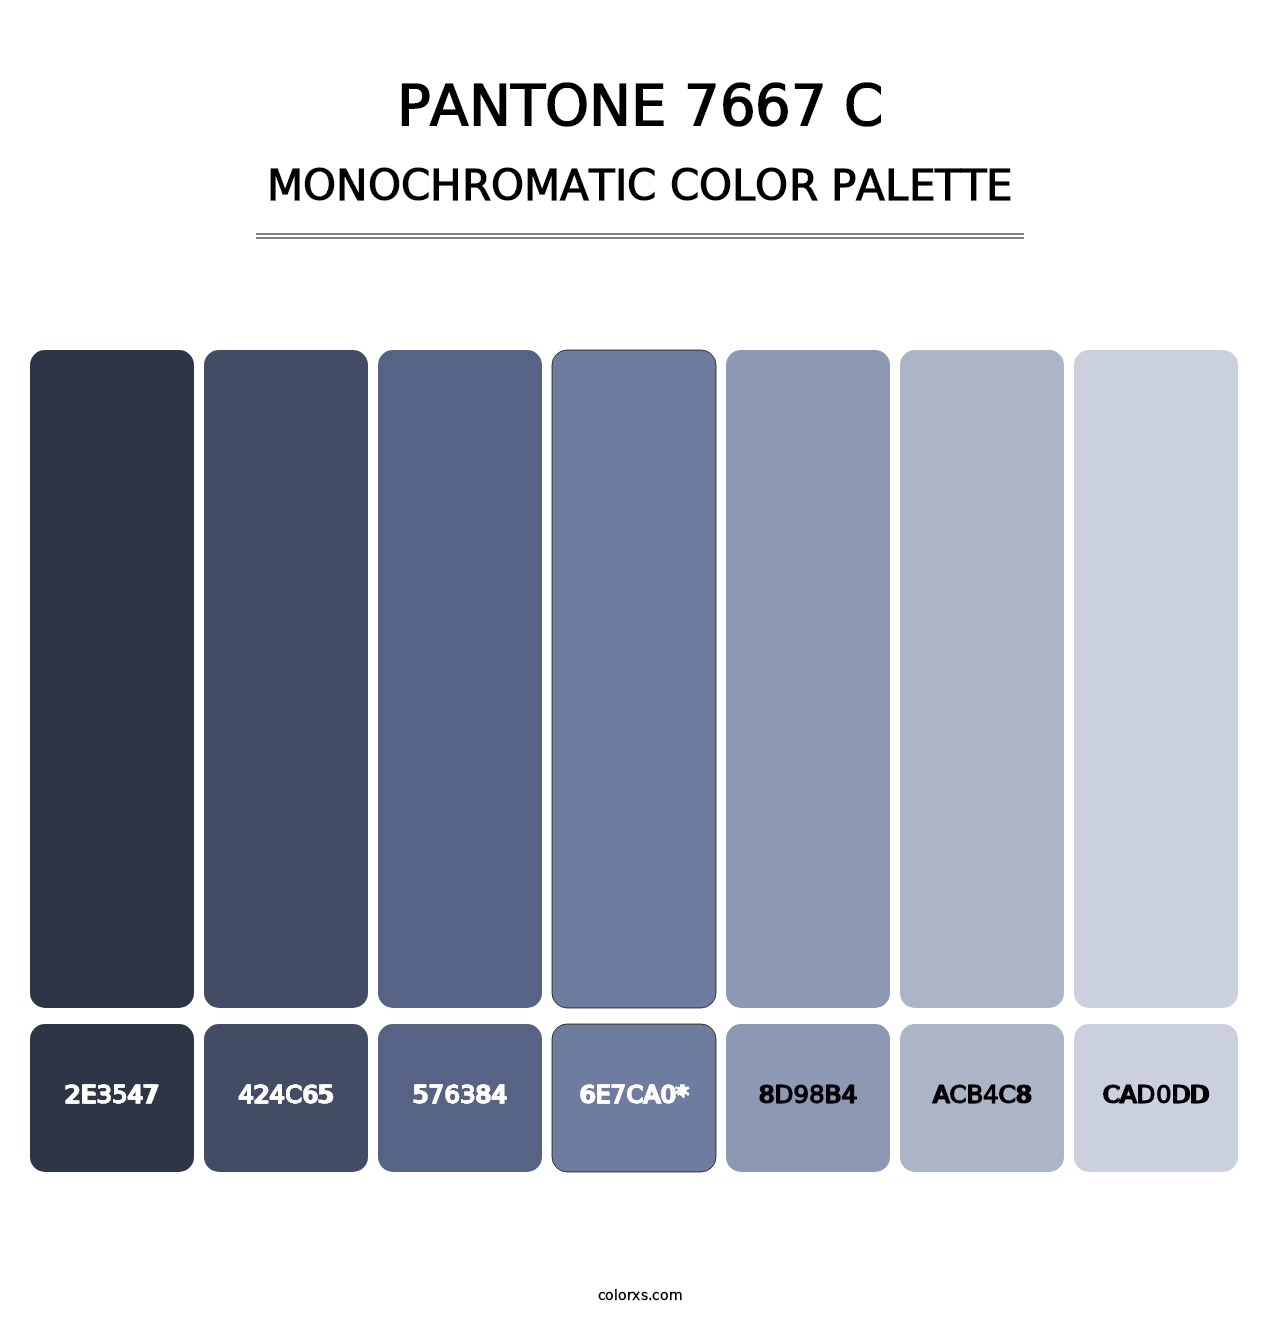 PANTONE 7667 C - Monochromatic Color Palette